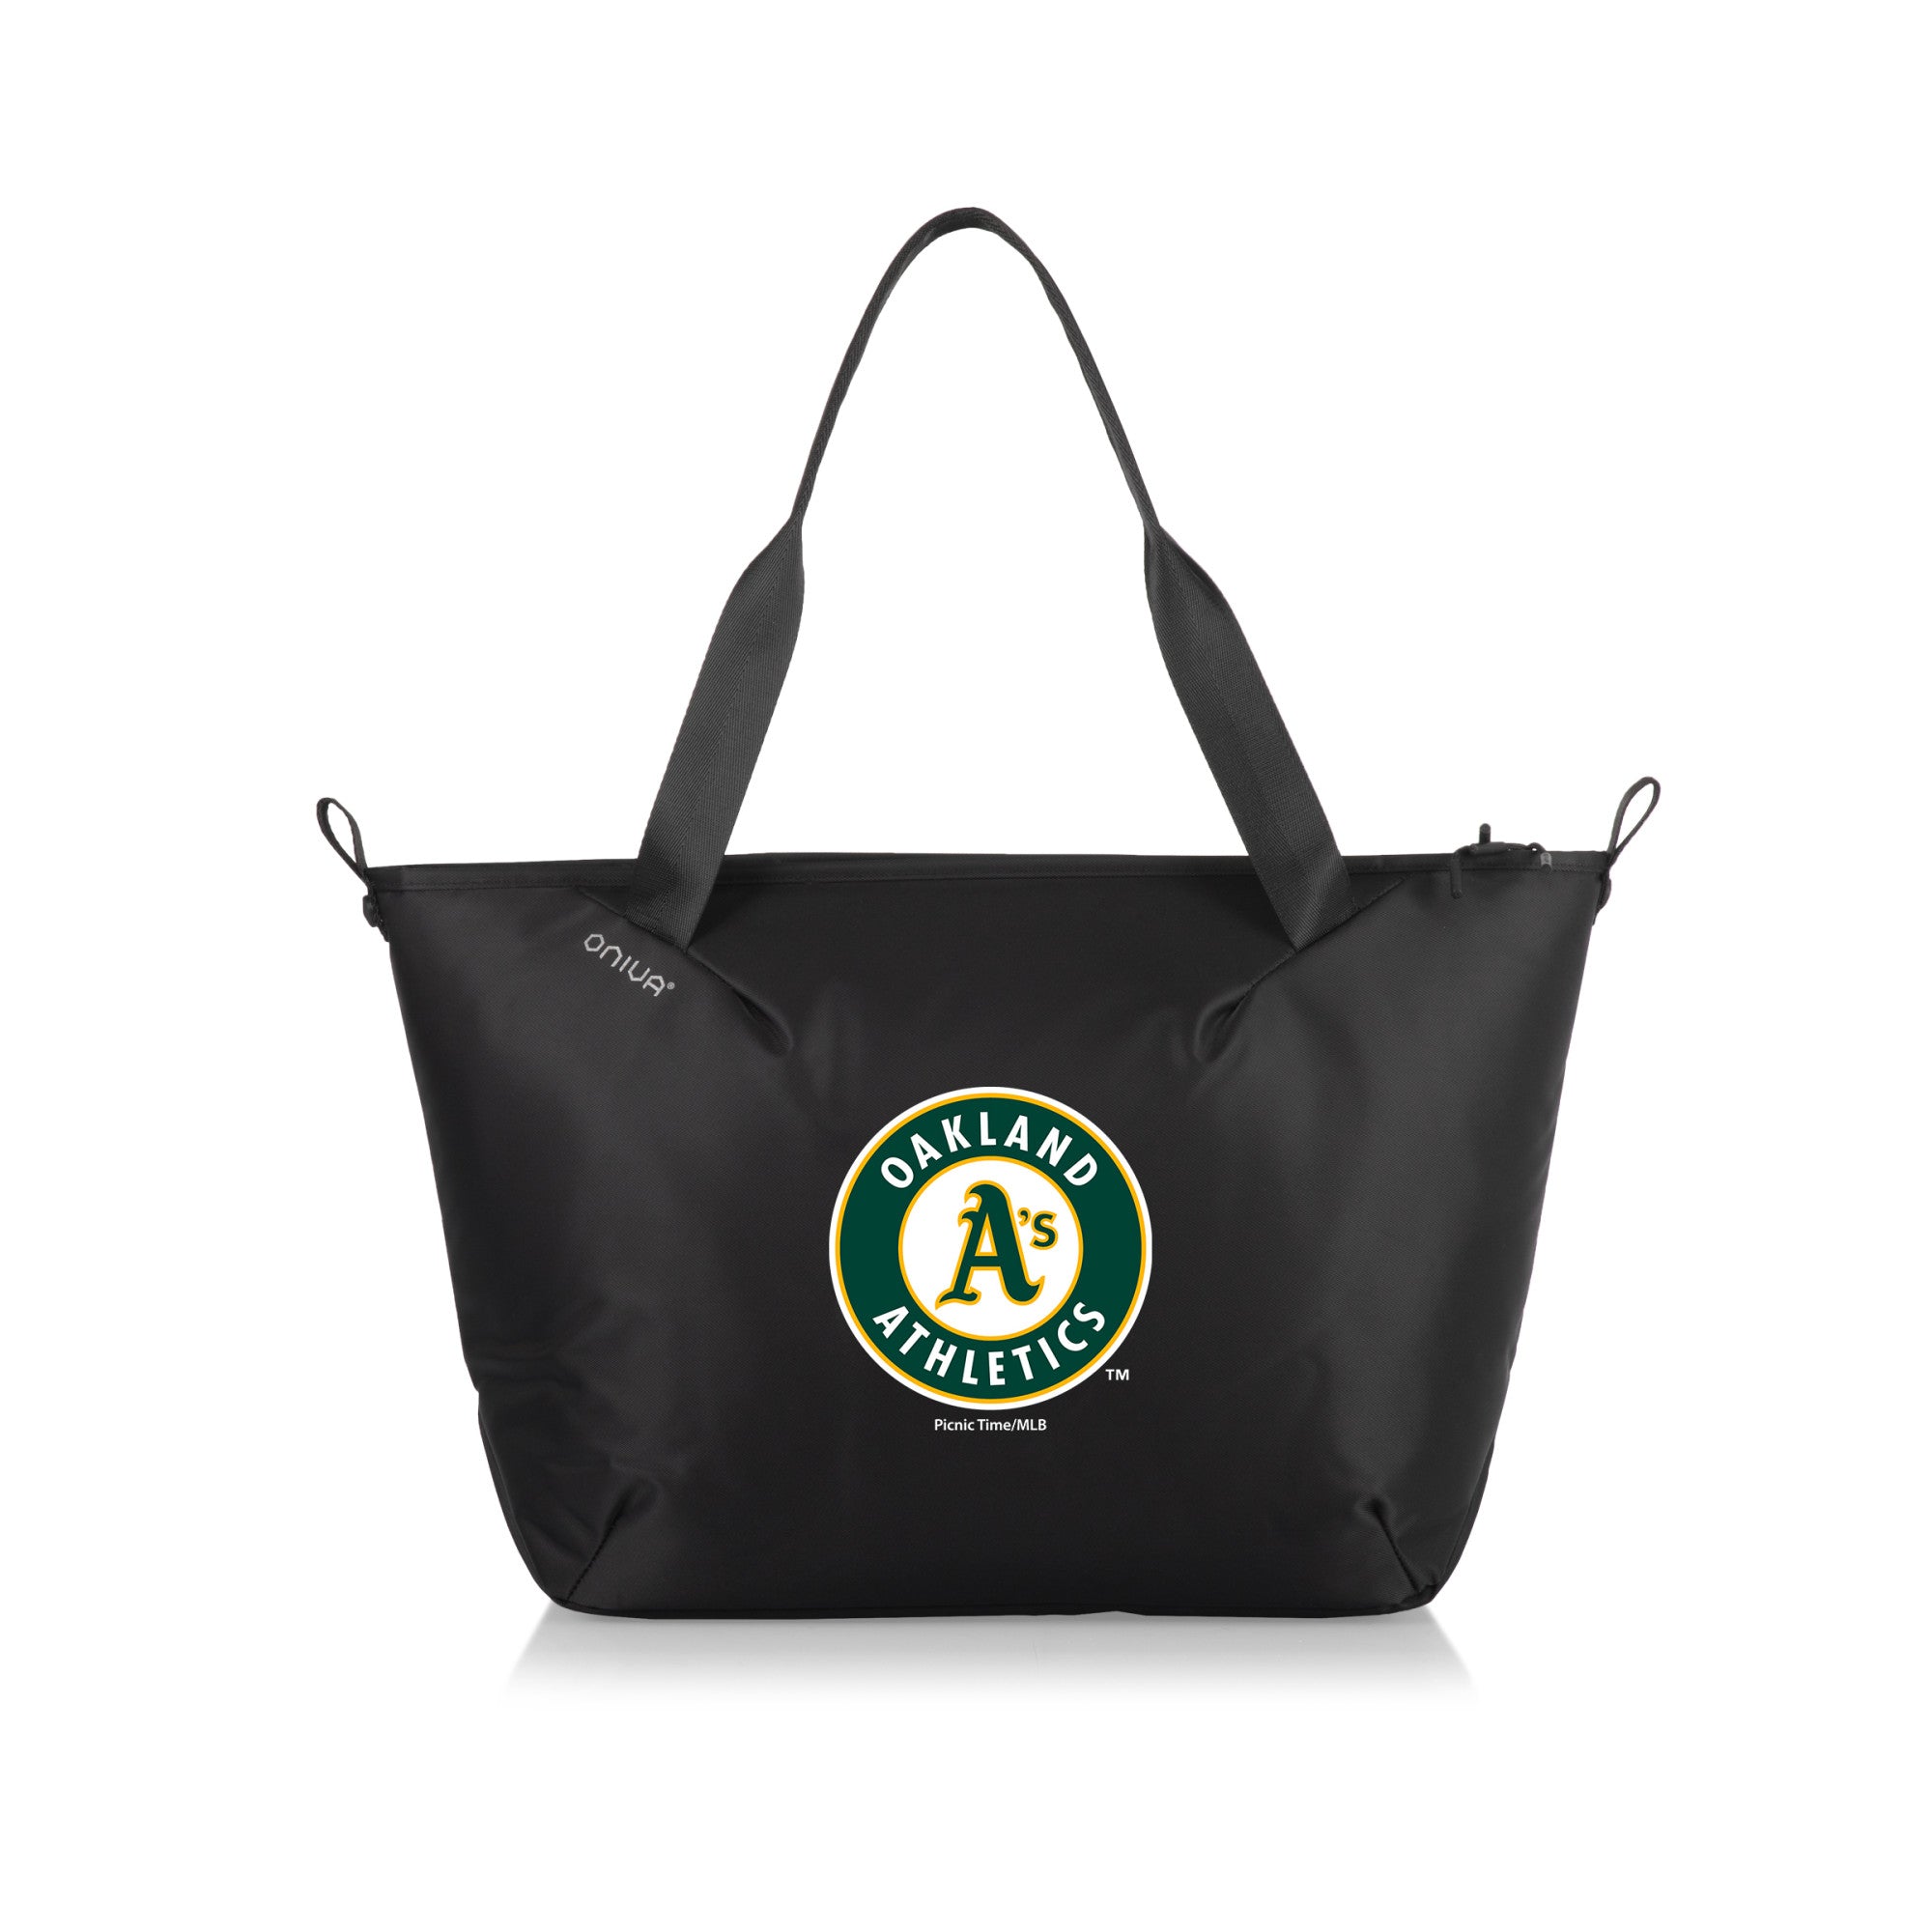 Oakland Athletics - Tarana Cooler Tote Bag